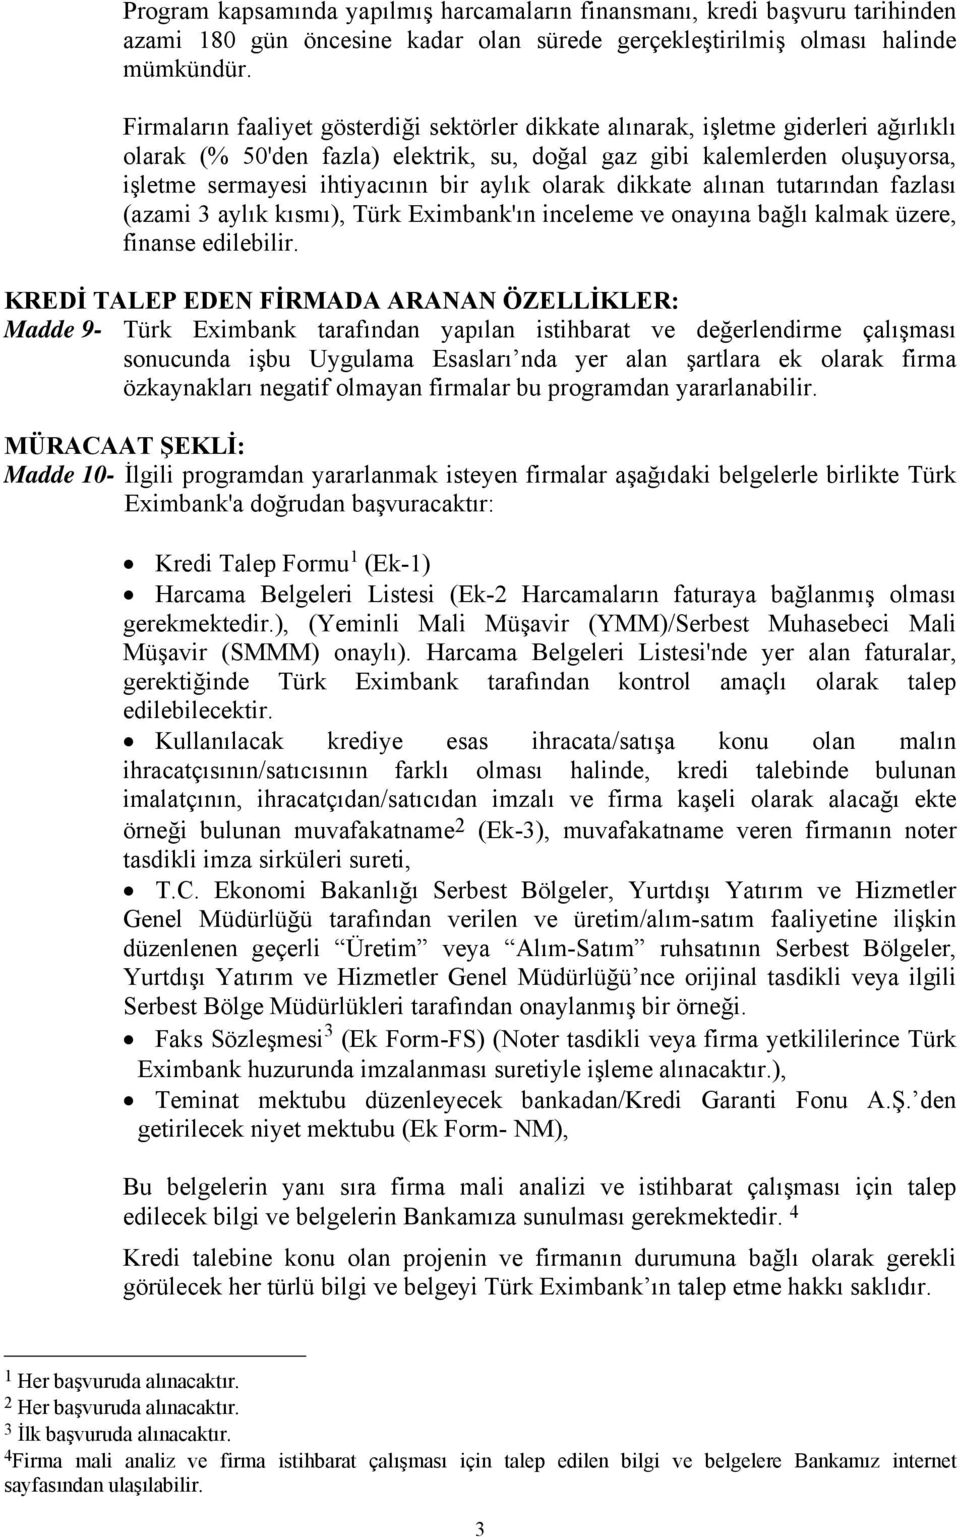 aylık olarak dikkate alınan tutarından fazlası (azami 3 aylık kısmı), Türk Eximbank'ın inceleme ve onayına bağlı kalmak üzere, finanse edilebilir.